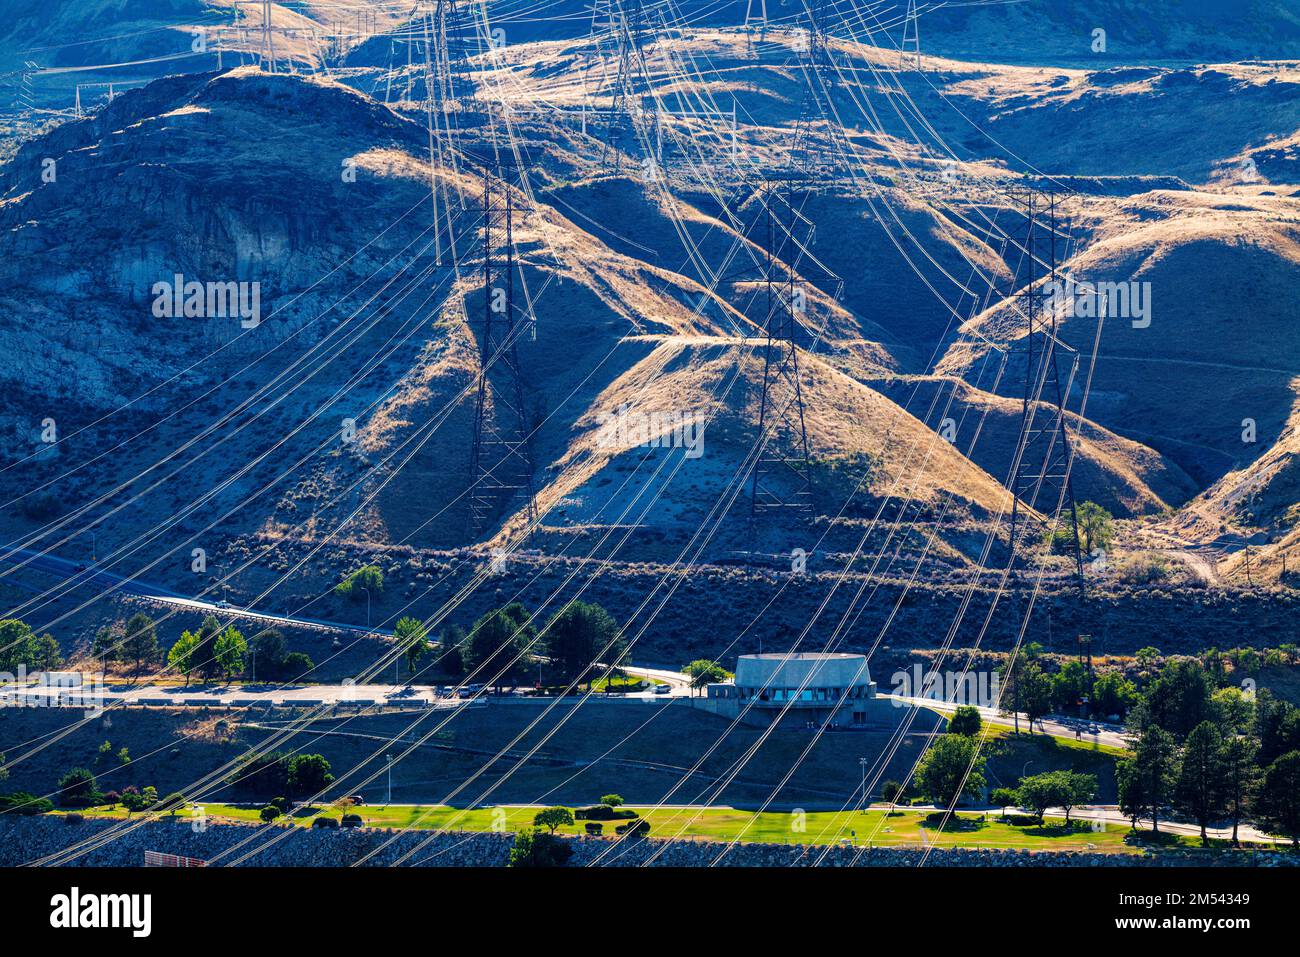 Des lignes de transmission électrique sont reliées au barrage hydroélectrique de Grand Coulee, le plus grand producteur d'électricité des États-Unis, à Columbia River, à l'État de Washington et aux États-Unis Banque D'Images